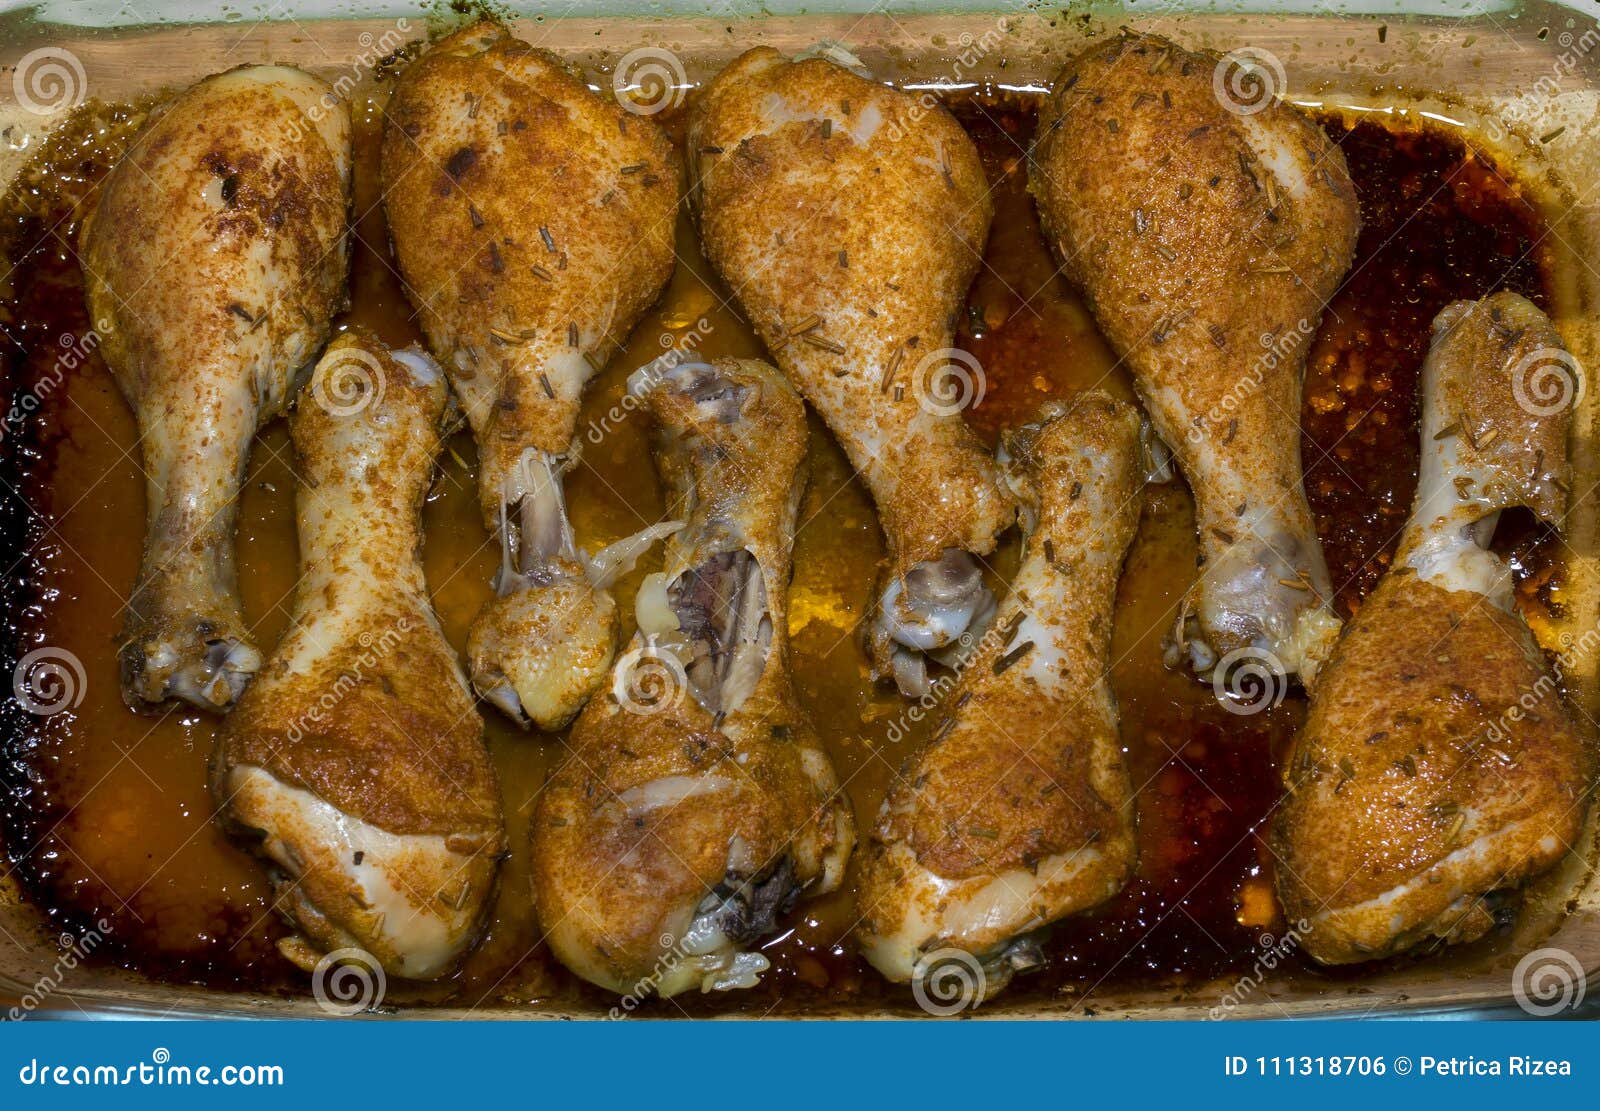 Πόδια κοτόπουλου που ψήνονται στο φούρνο. Πόδια κοτόπουλου που ψήνονται στους μηρούς κοτόπουλου φούρνων με τα καρυκεύματα